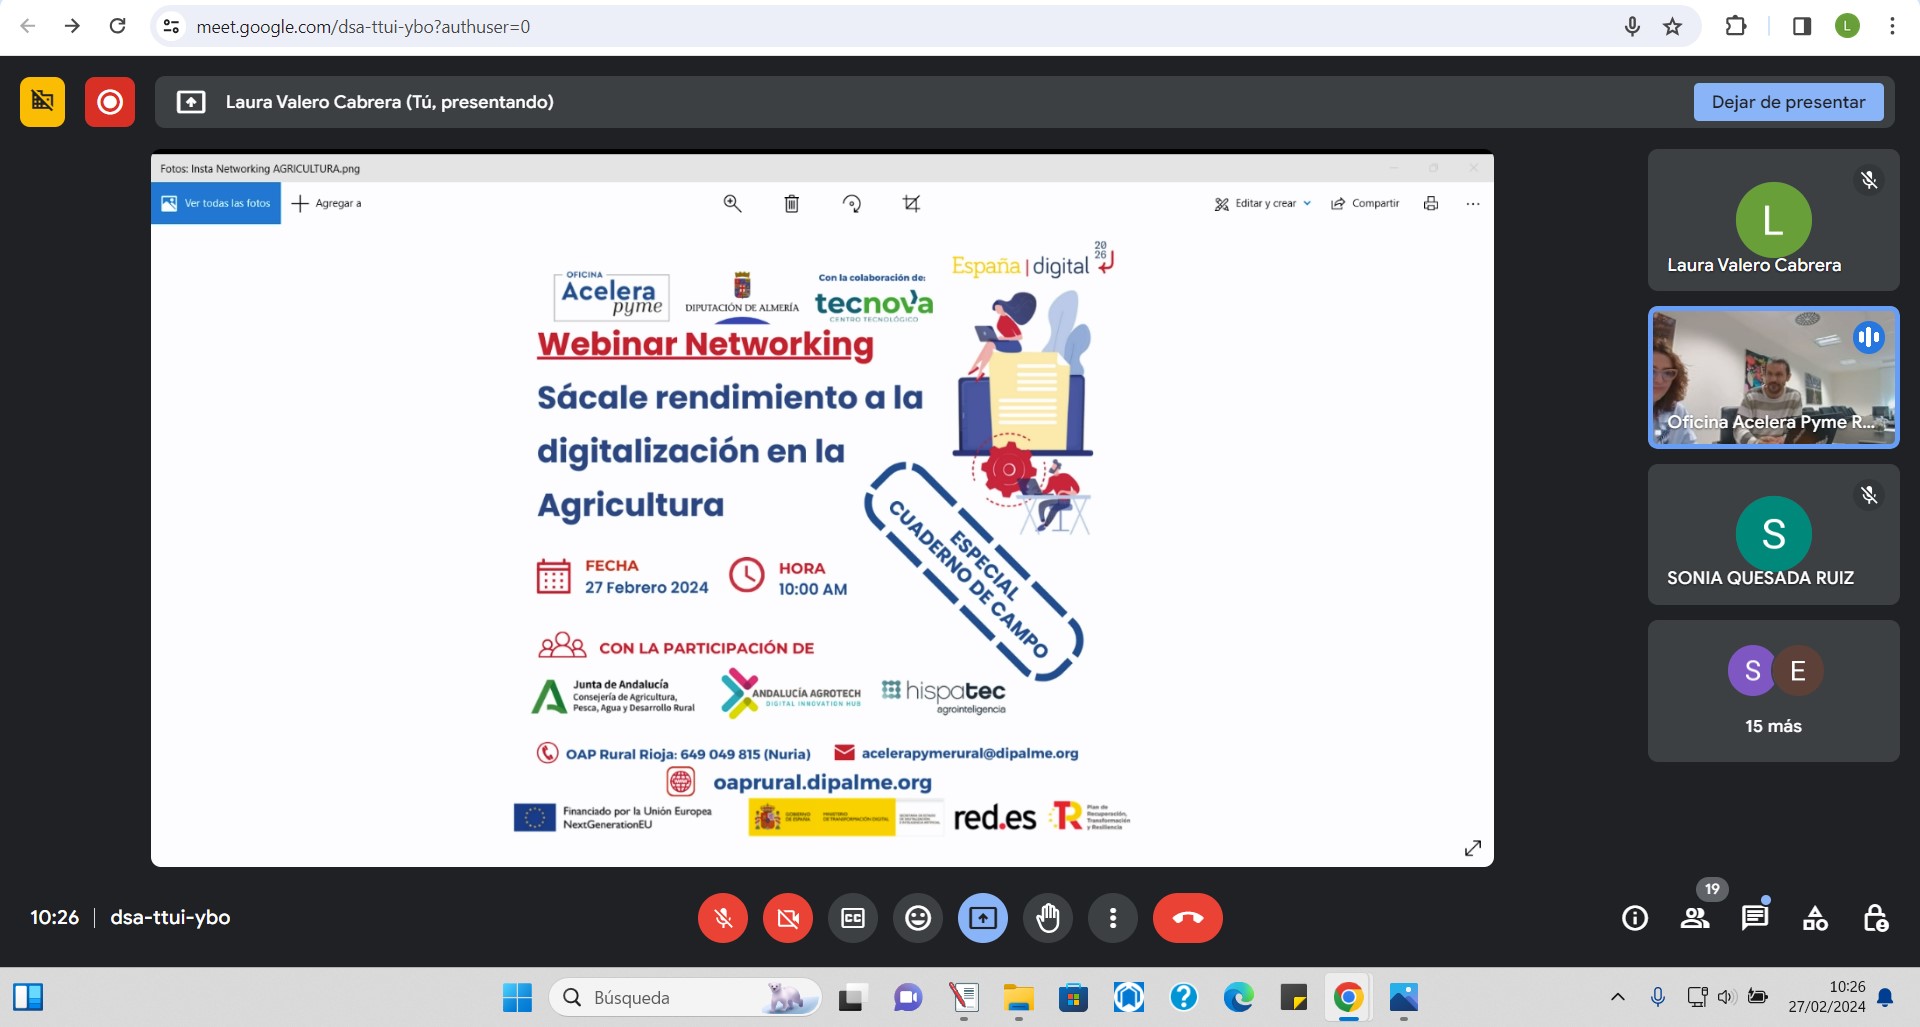 Agradecimiento a los participantes del primer Networking online en sector agroalimentario organizado por la Oficina Acelera Pyme Rural_Dipalme de la Diputación de Almería en colaboración con TECNOVA.